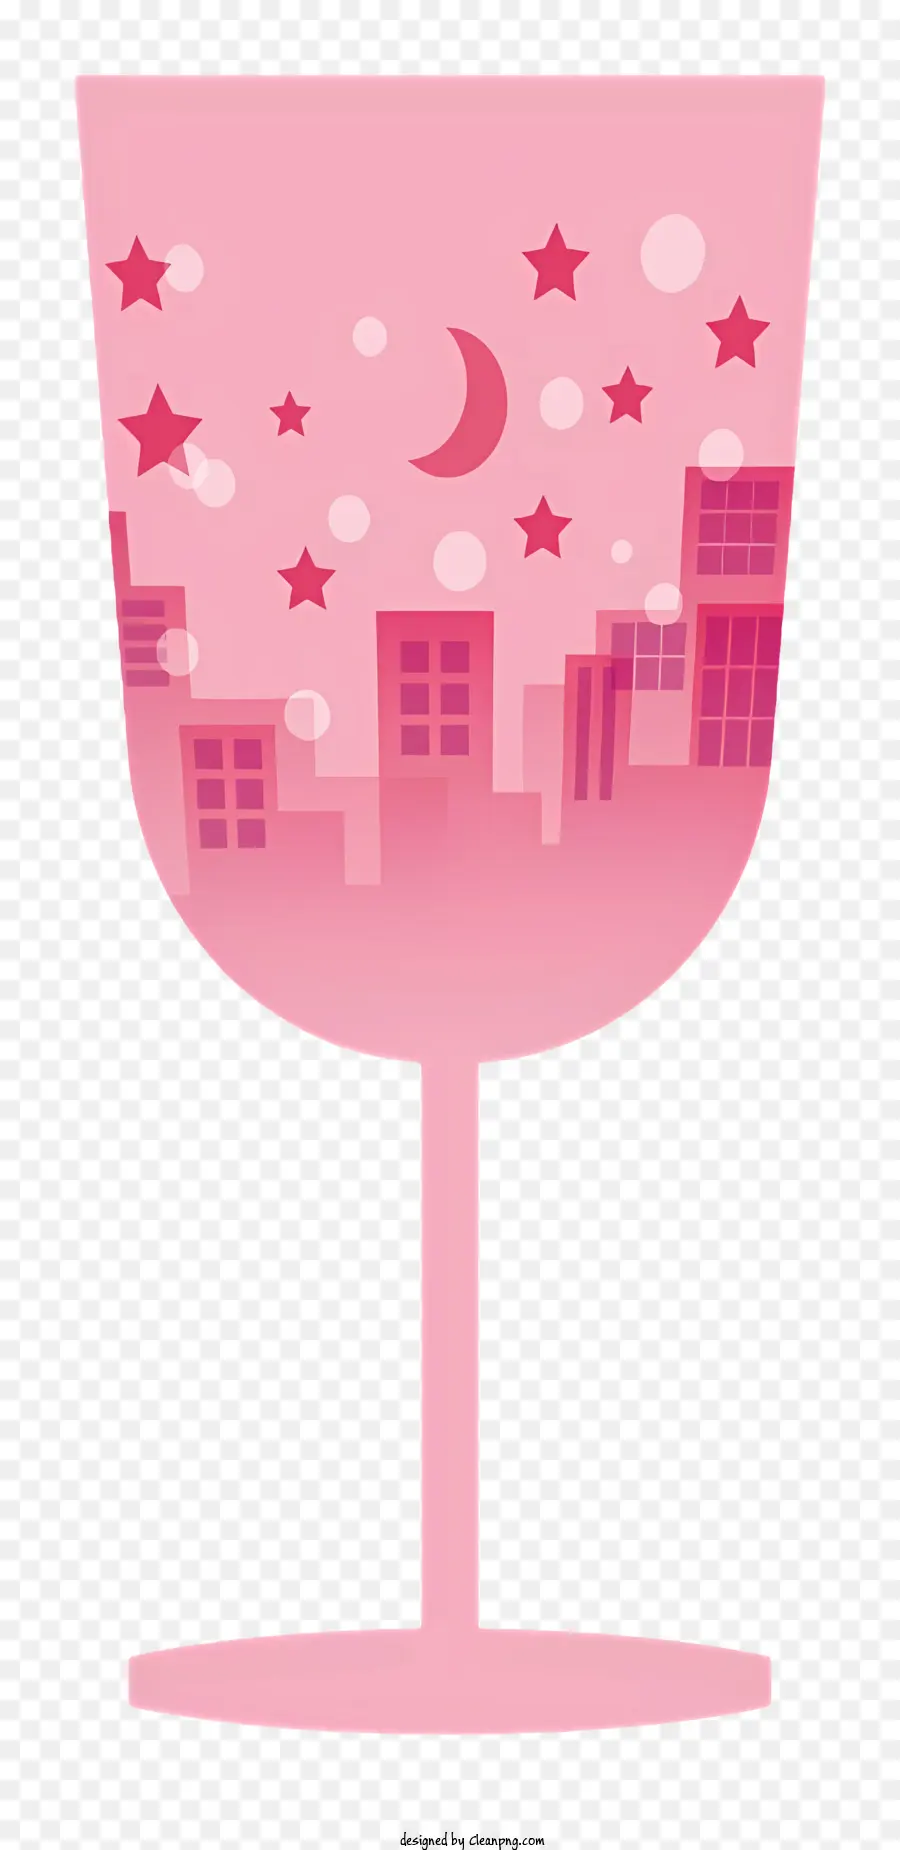 Cartoon Pink Wine Glass City Blick auf Nacht Sterne Mond - Pinkes Weinglas mit Blick auf die Stadt nachts